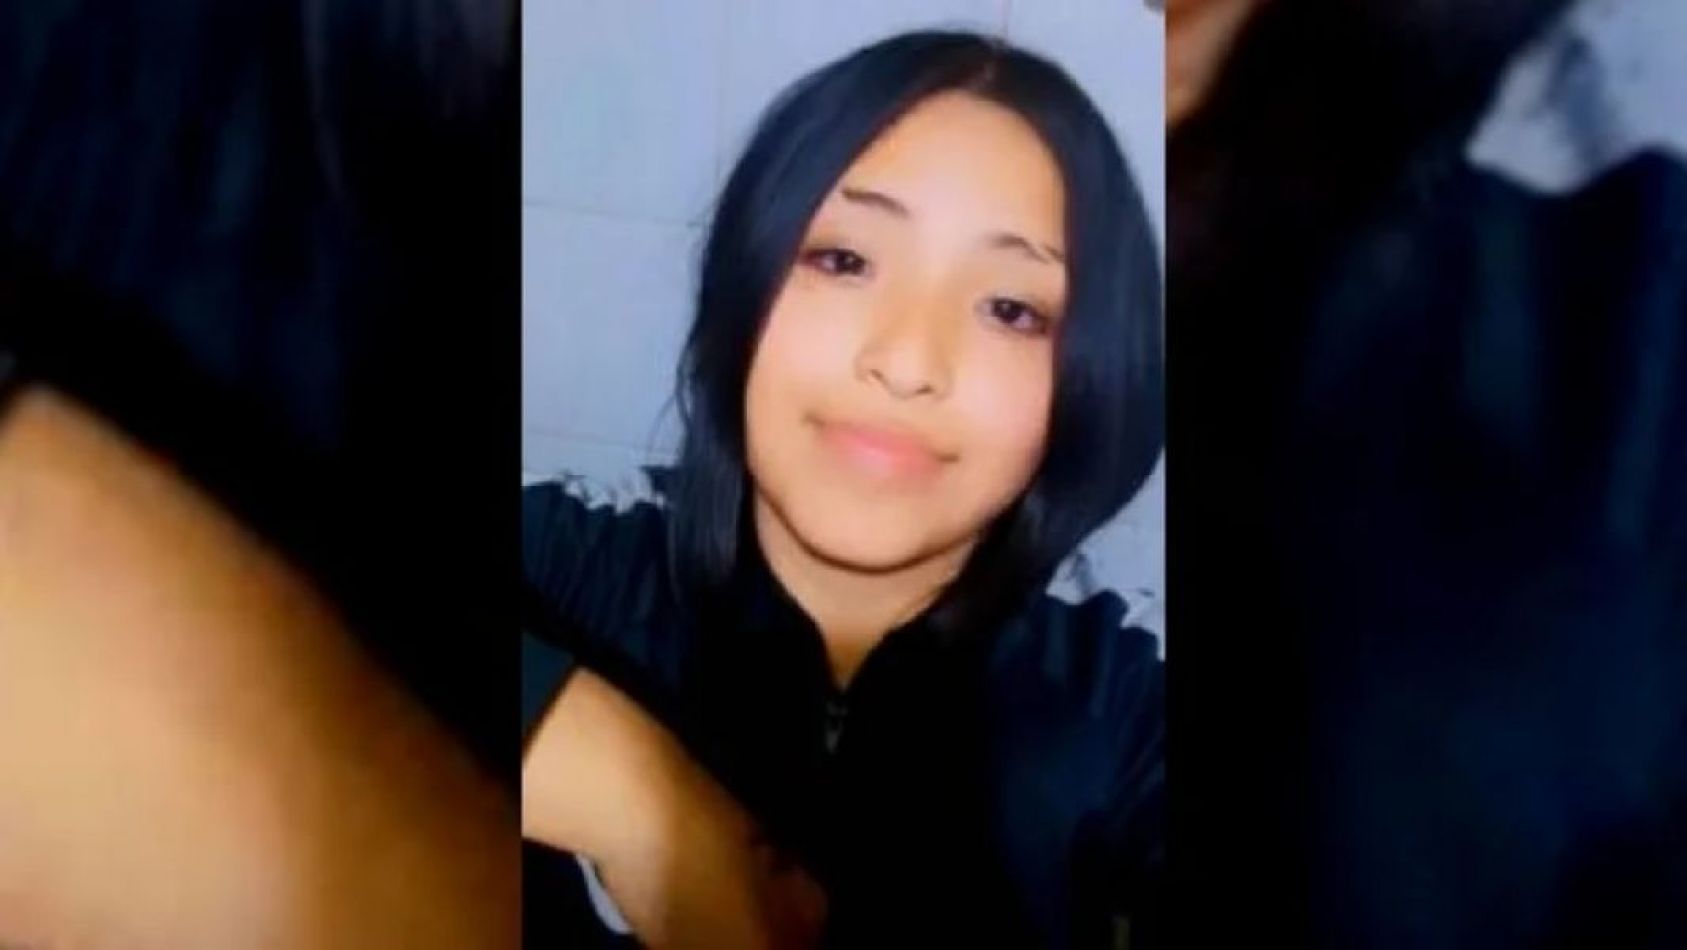 Buscan intensamente a Tiara Analuz Colque de 11 años desaparecida desde el lunes